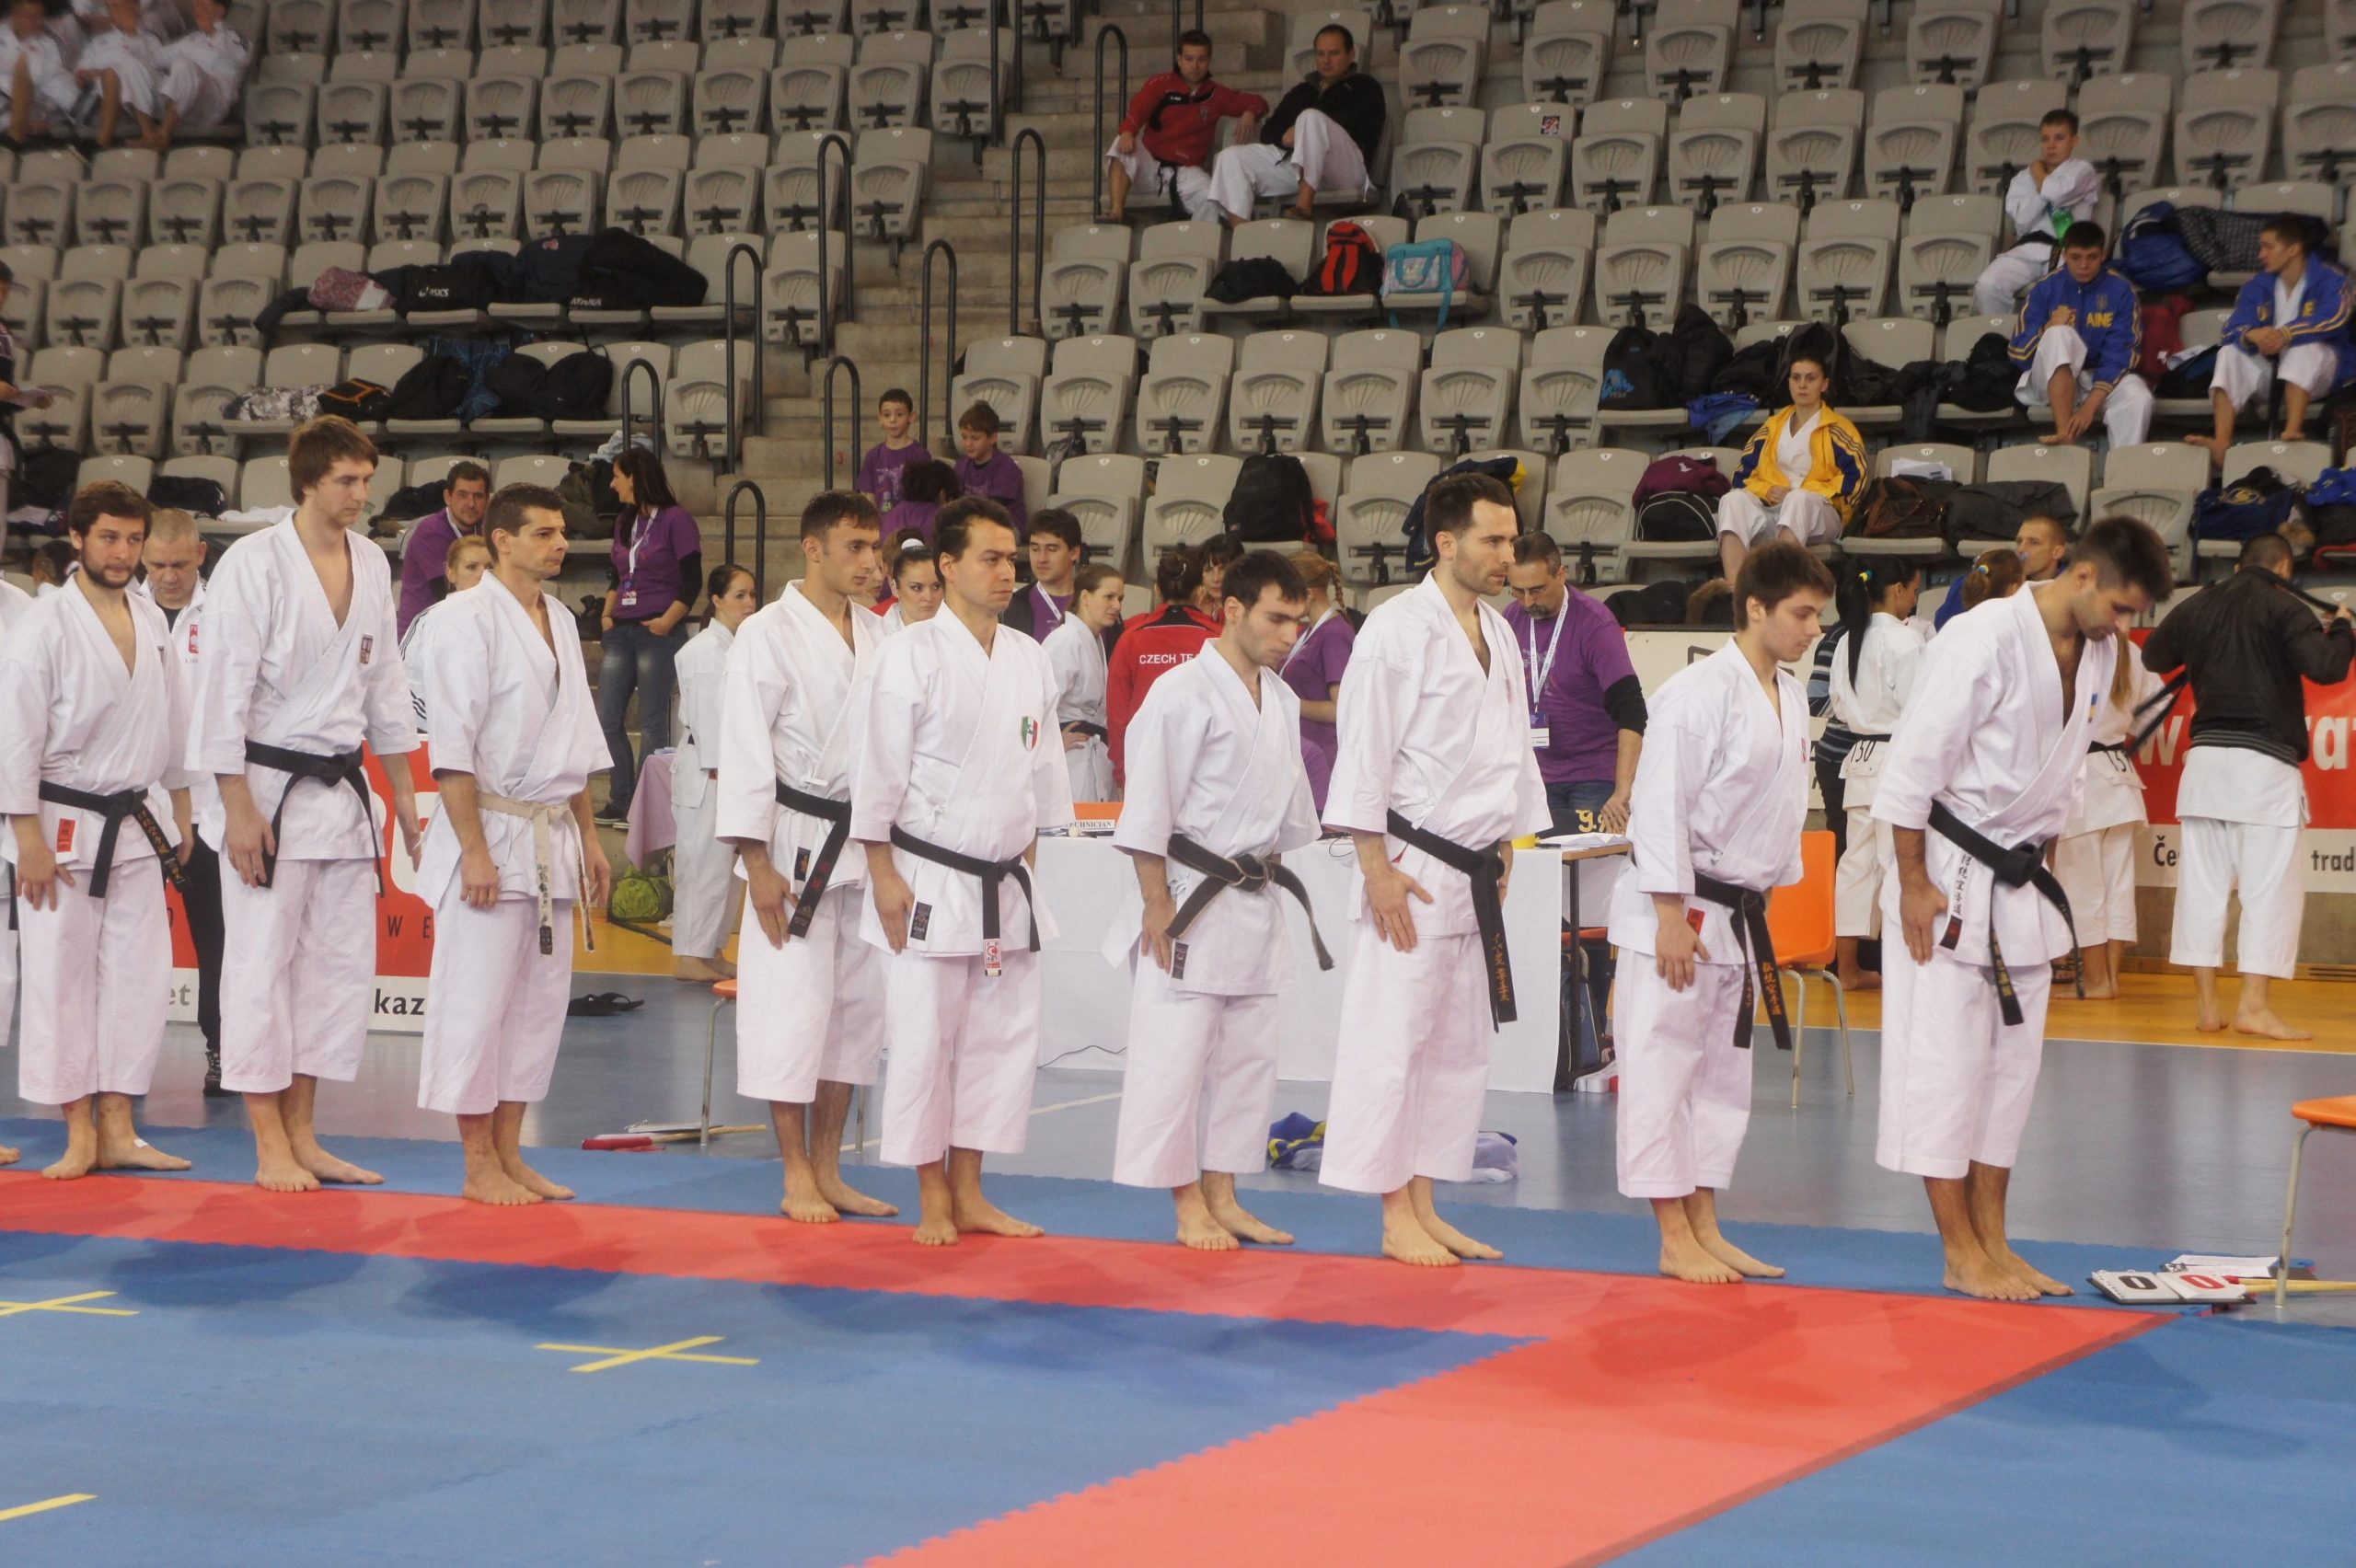 Europos tradicinio karate čempionatas – jau šį savaitgalį / Europos tradicinio karate čempionatas – jau šį savaitgalį